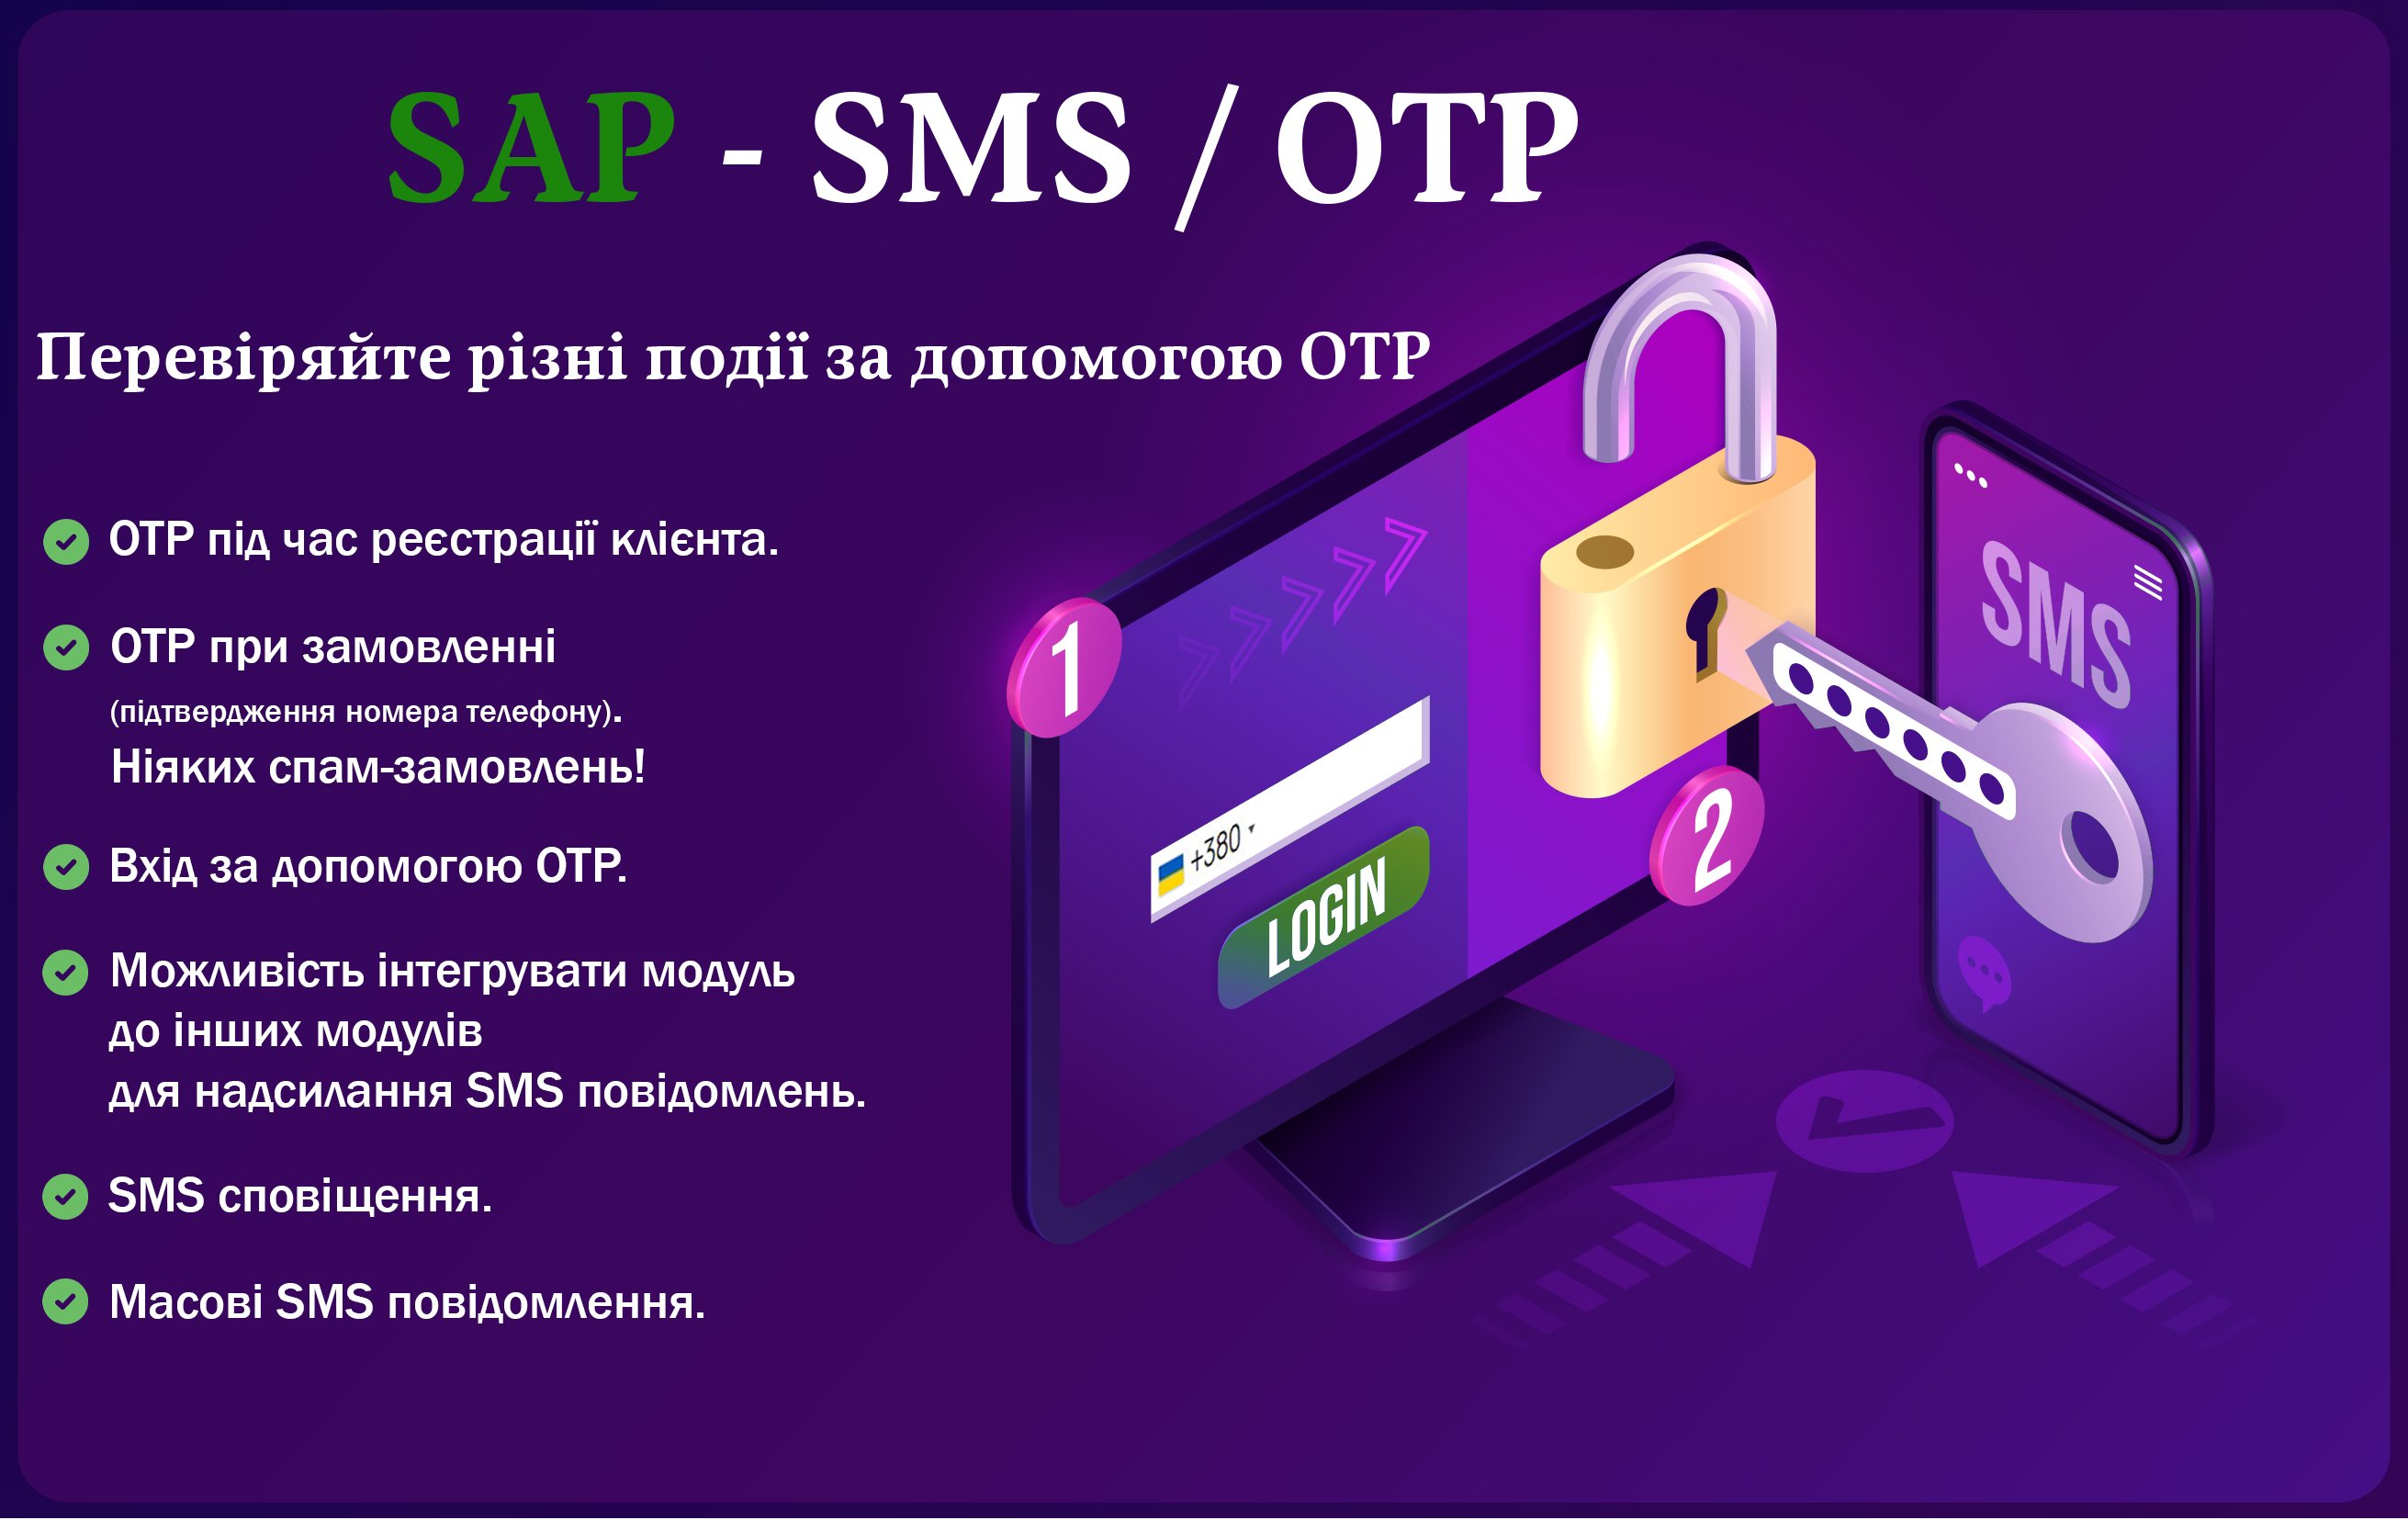 SAP - SMS / OTP (Авторизация по телефону) / SMS уведомления